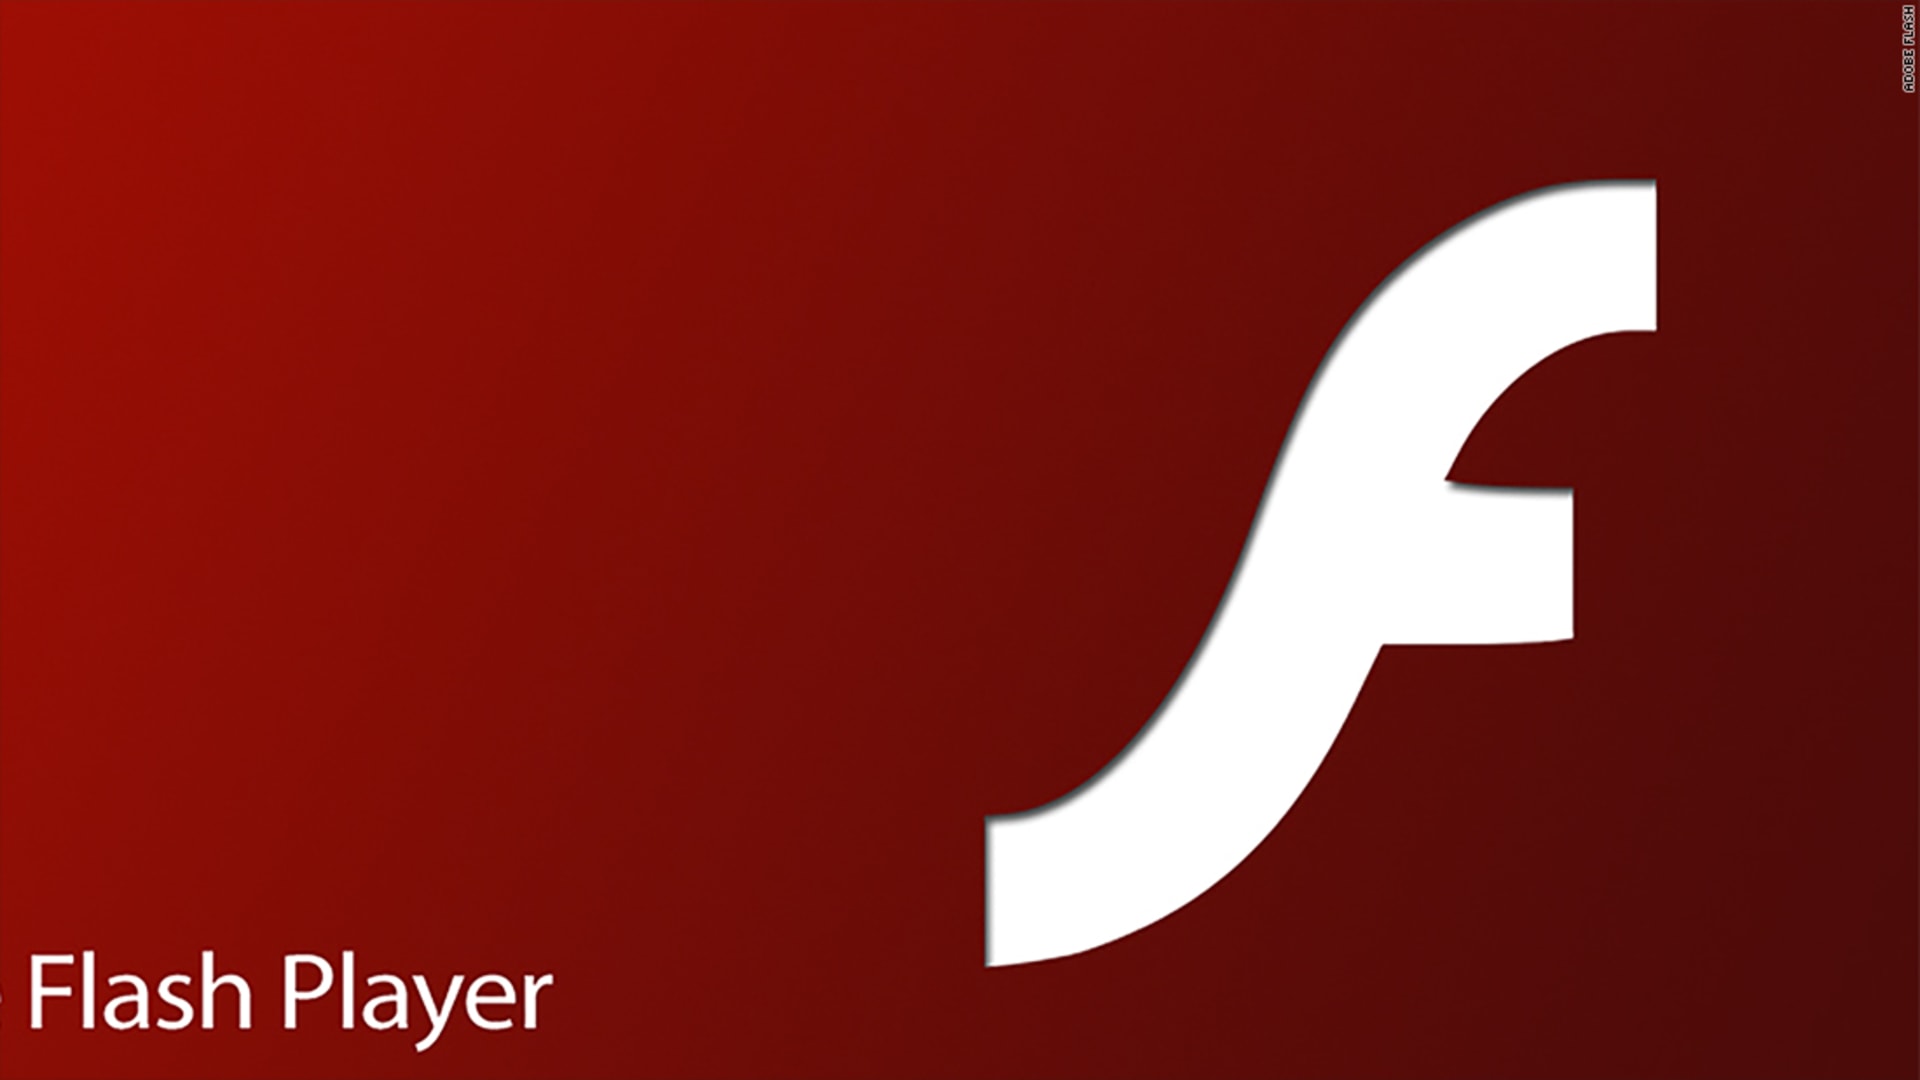 Флеш плеер 3. Adobe Flash. Adobe Flash Player 2022. Логотип флеш плеер. Адобе флеш плеер анимация.